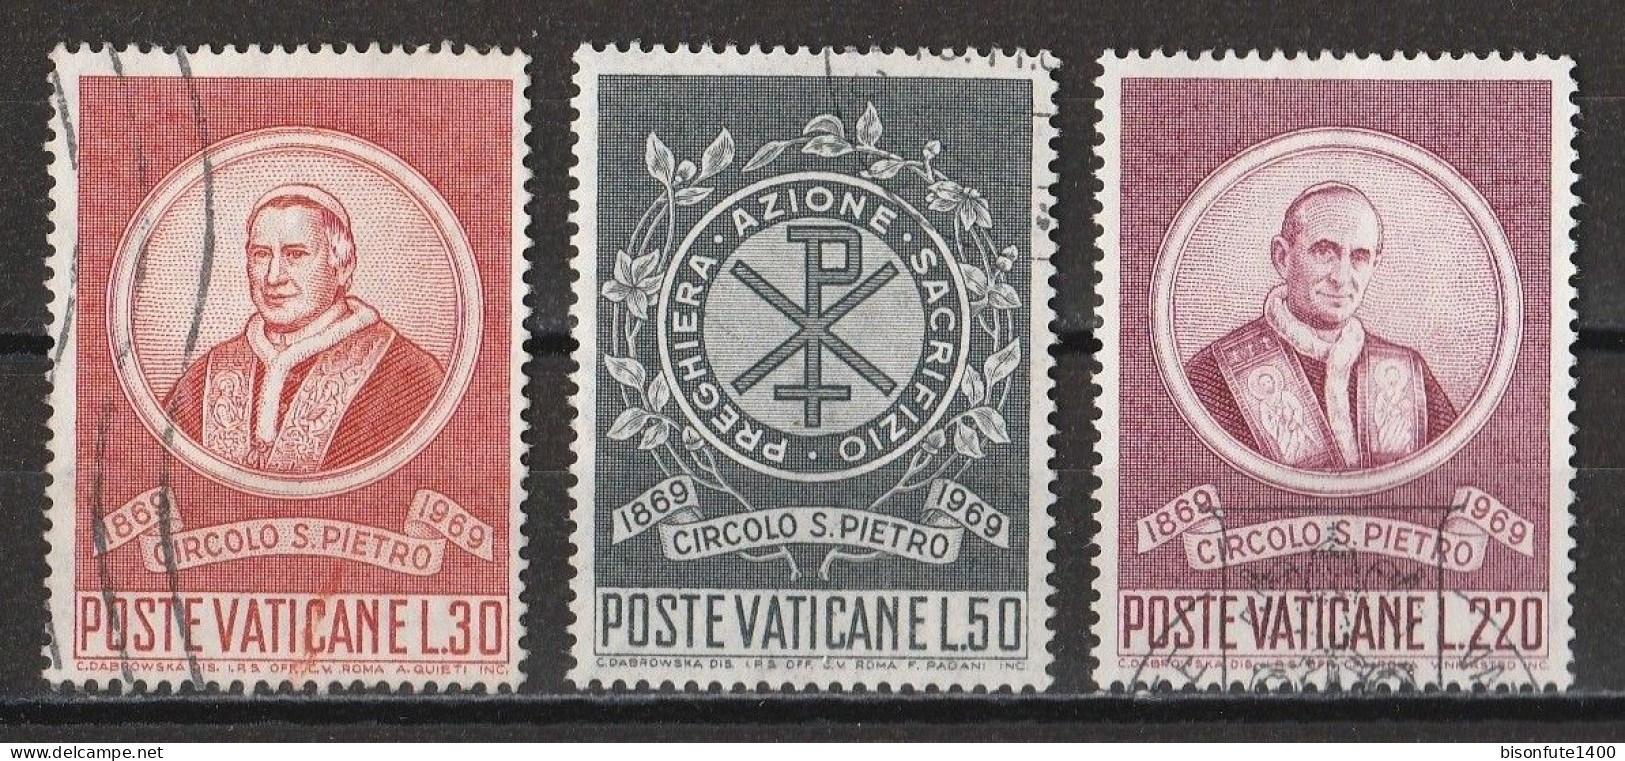 Vatican 1969 : Timbres Yvert & Tellier N° 488 - 489 - 491 - 492 - 493 - 494 - 495 Et 496 Oblitérés. - Gebruikt